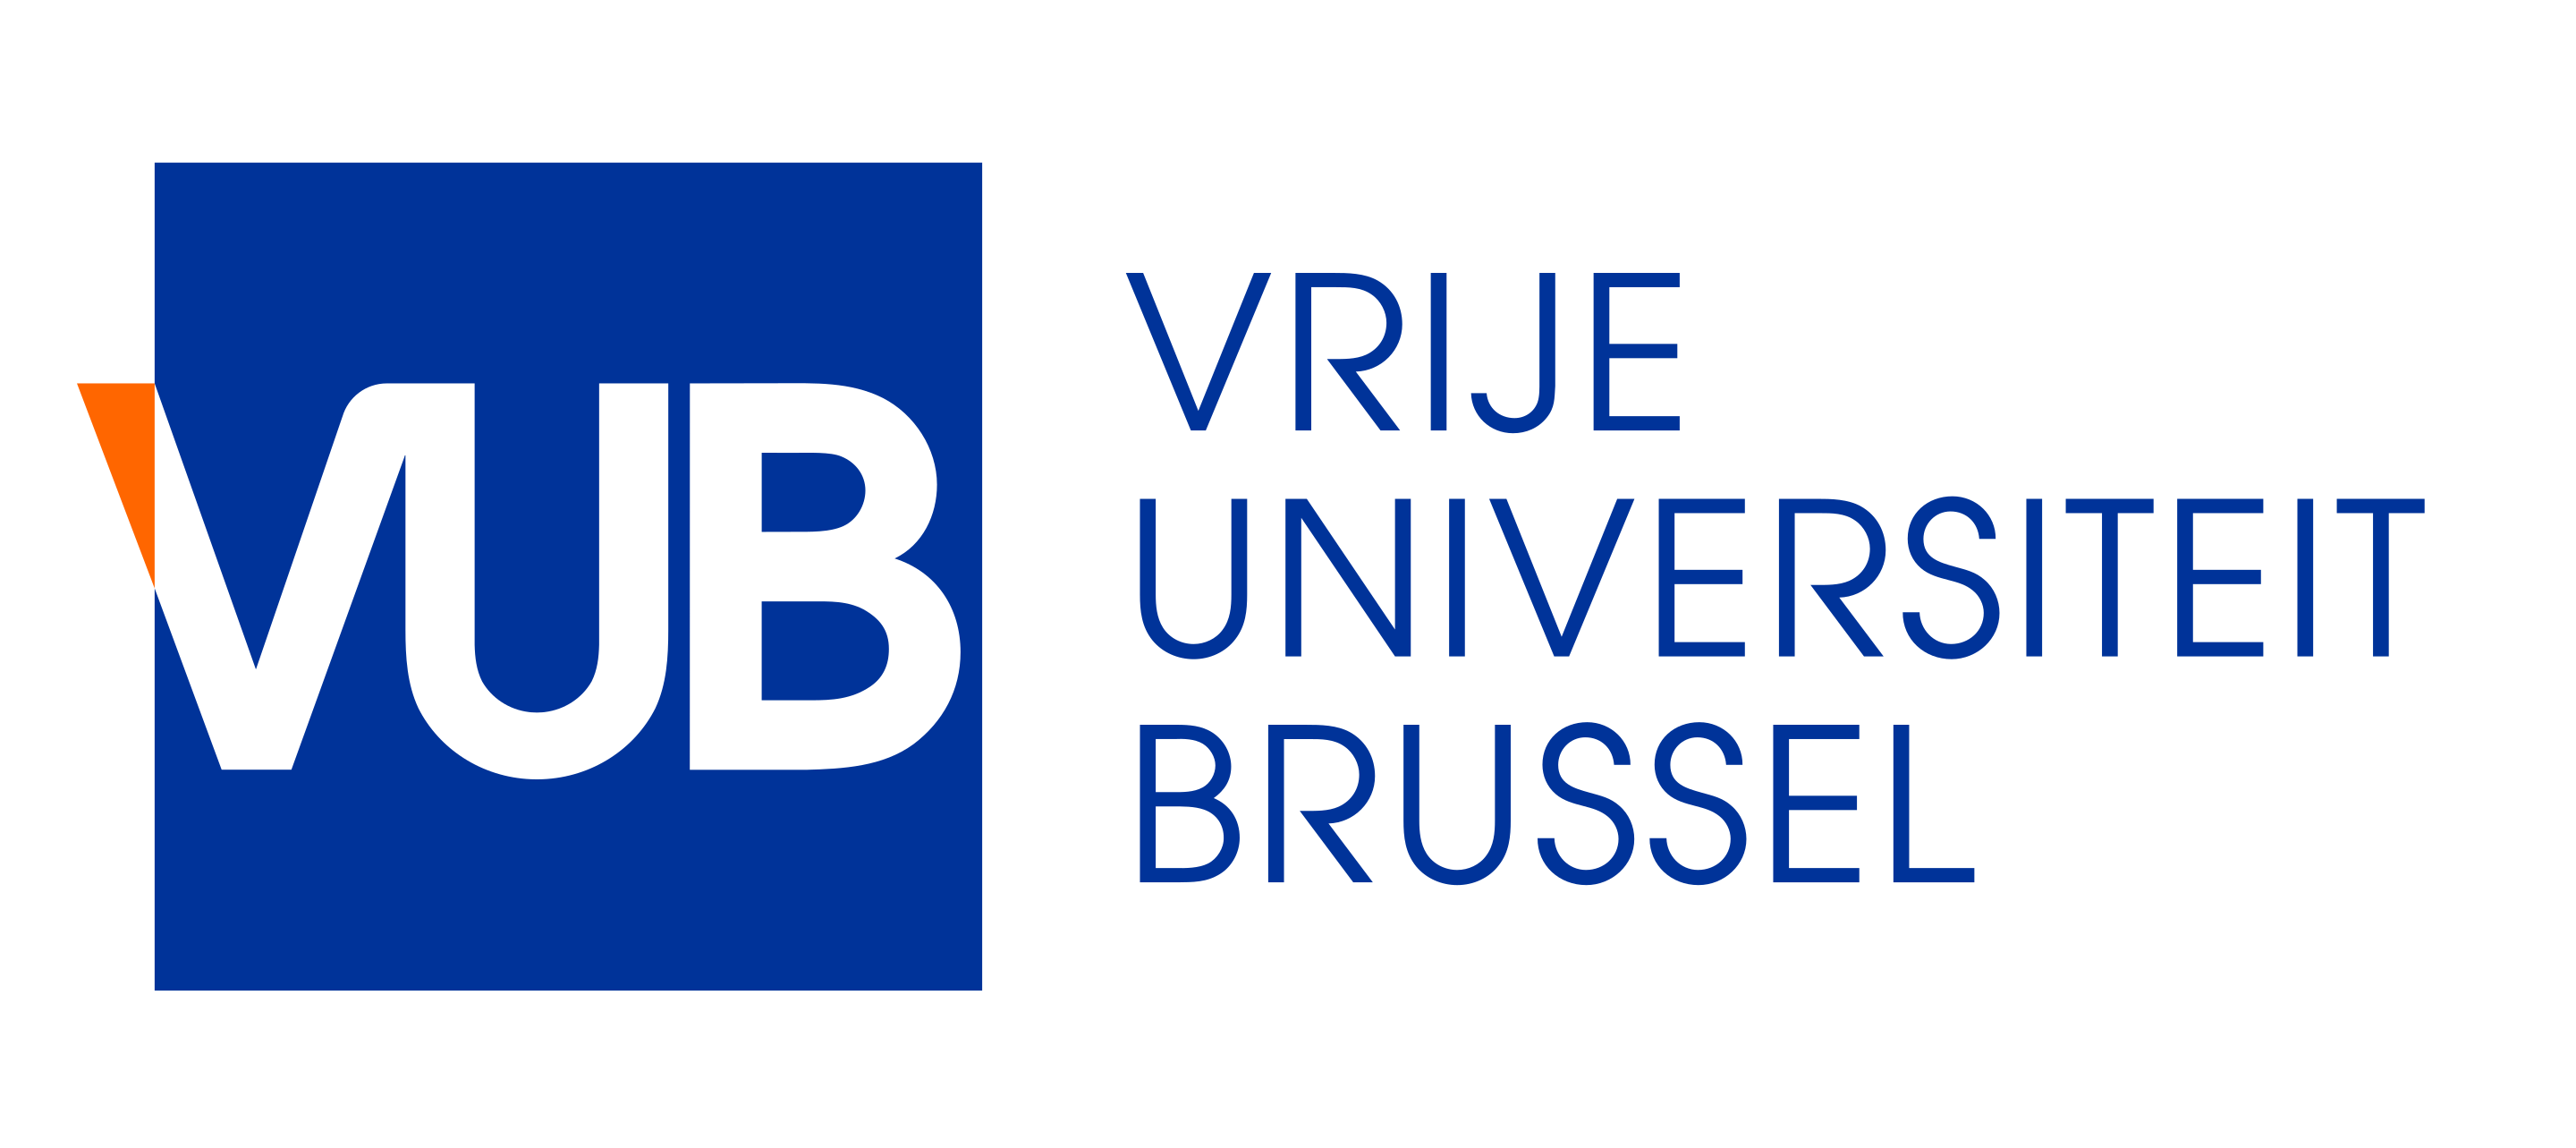 Vrije_Universiteit_Brussel_logo.svg.png (88 KB)